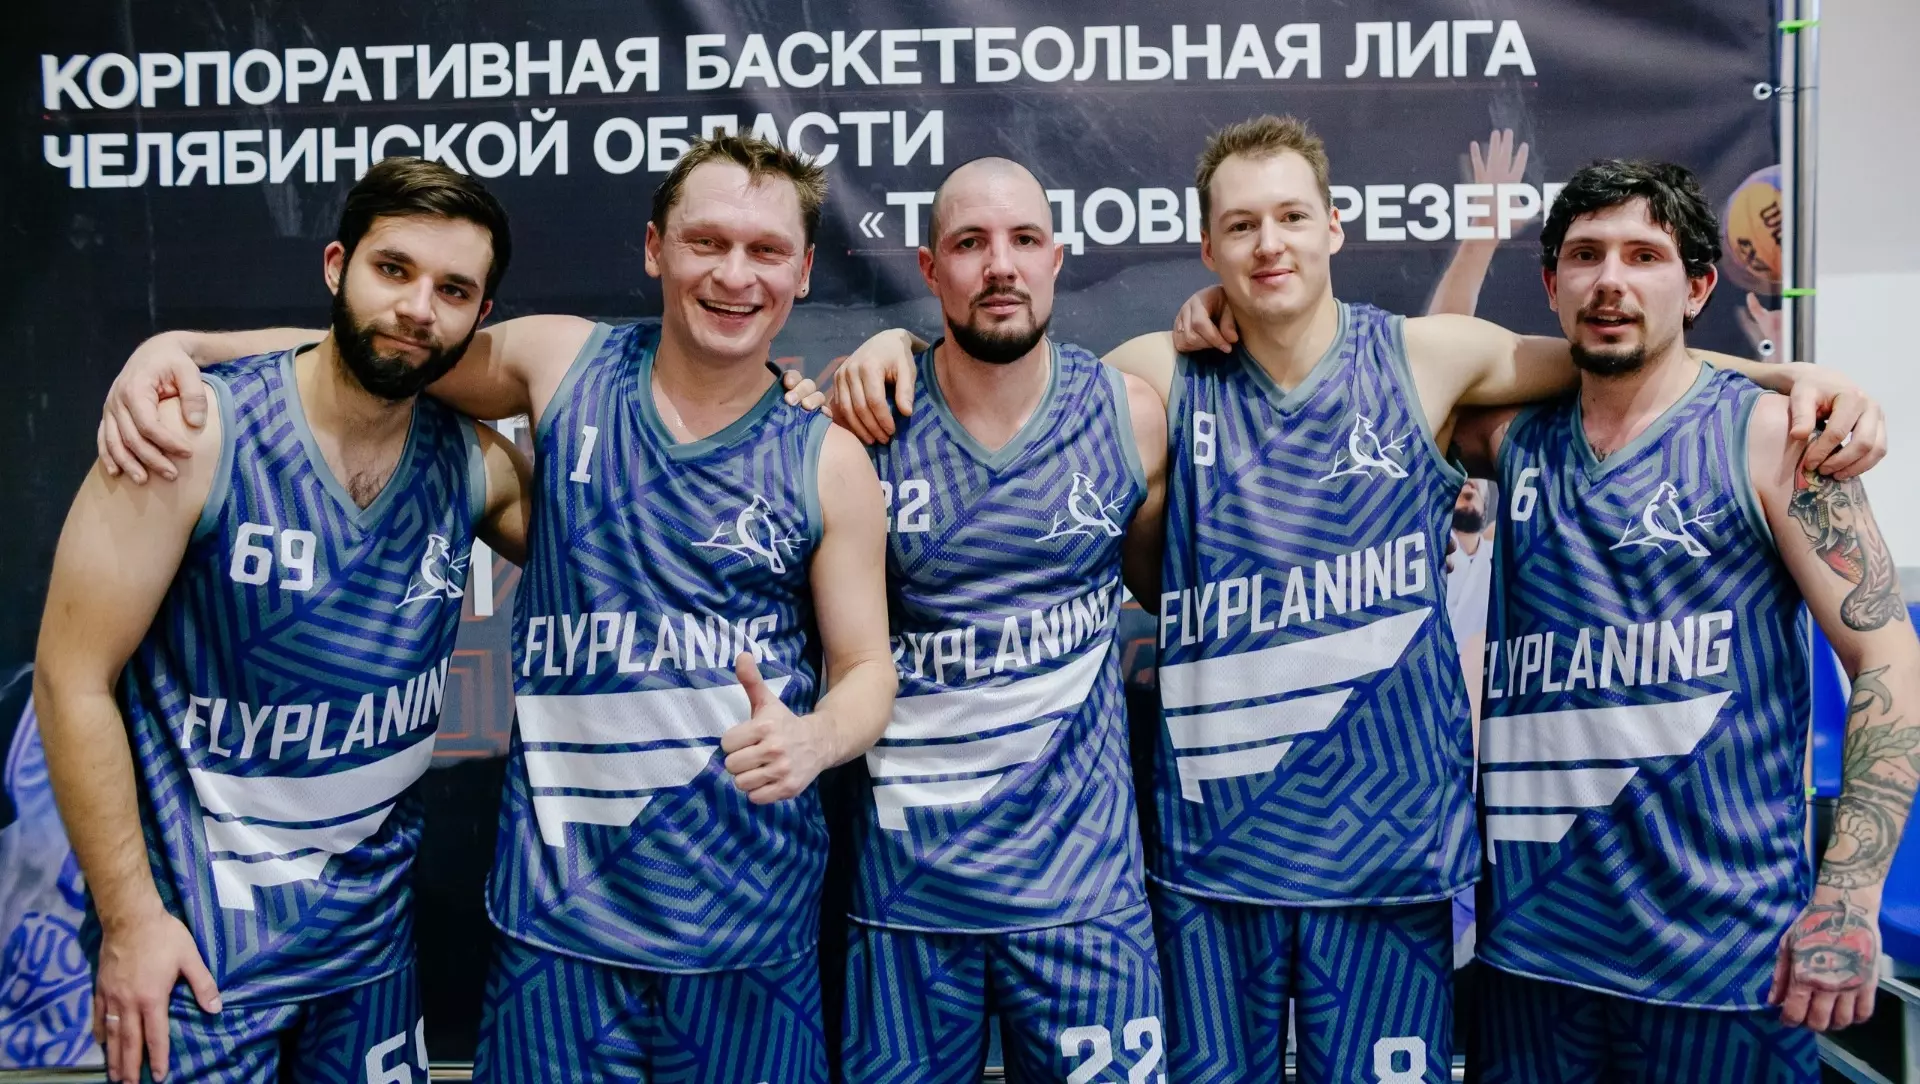 Команда челябинской АПРИ «Флай Плэнинг» выступила в Корпоративной баскетбольной лиге